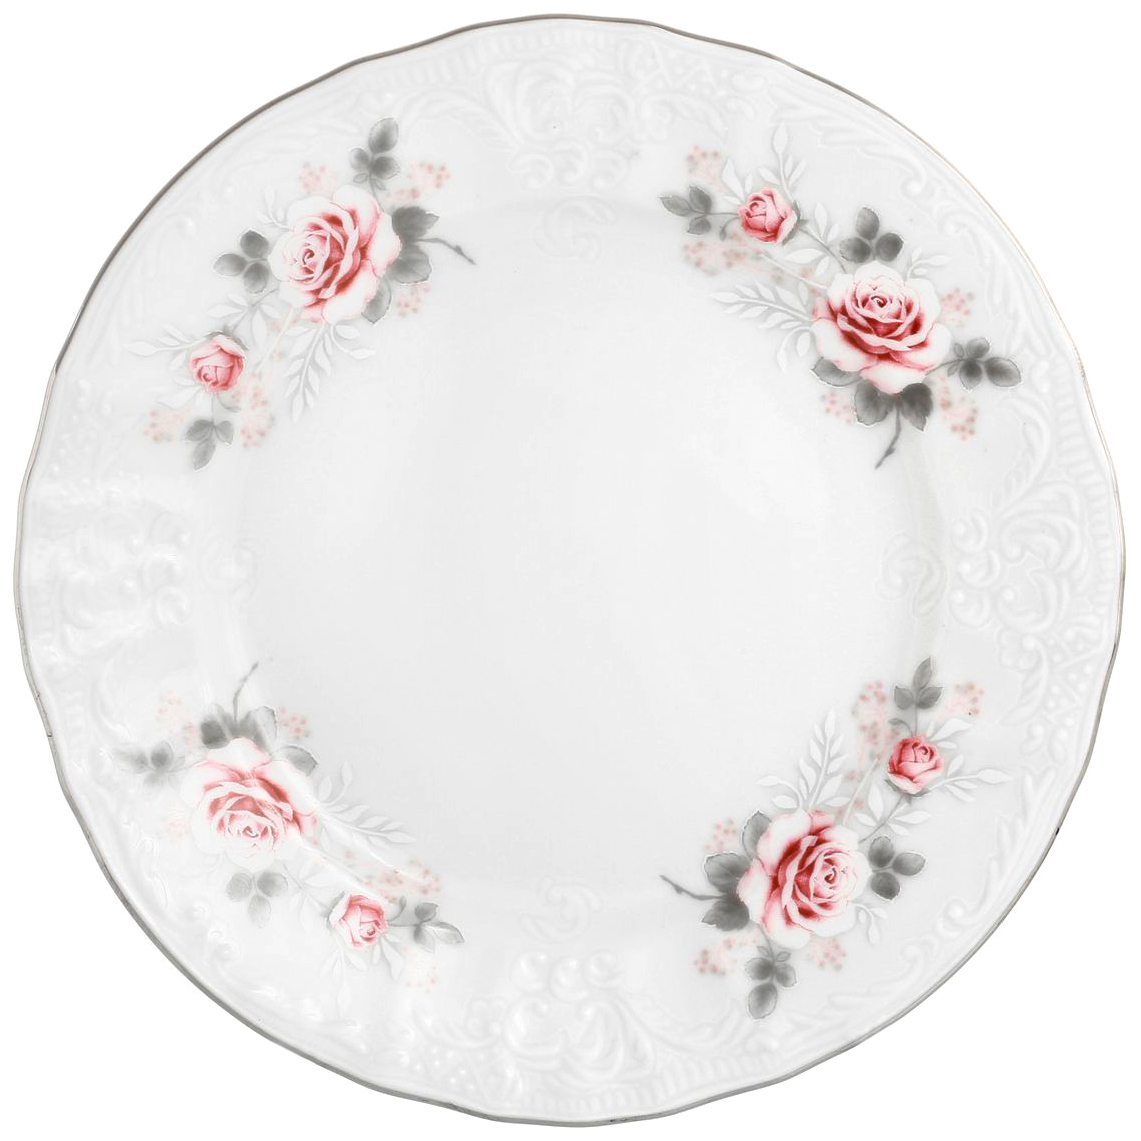 Набор десертных тарелок Bernadotte Бледные розы 17 см 6 шт набор для рисования на воде в технике эбру